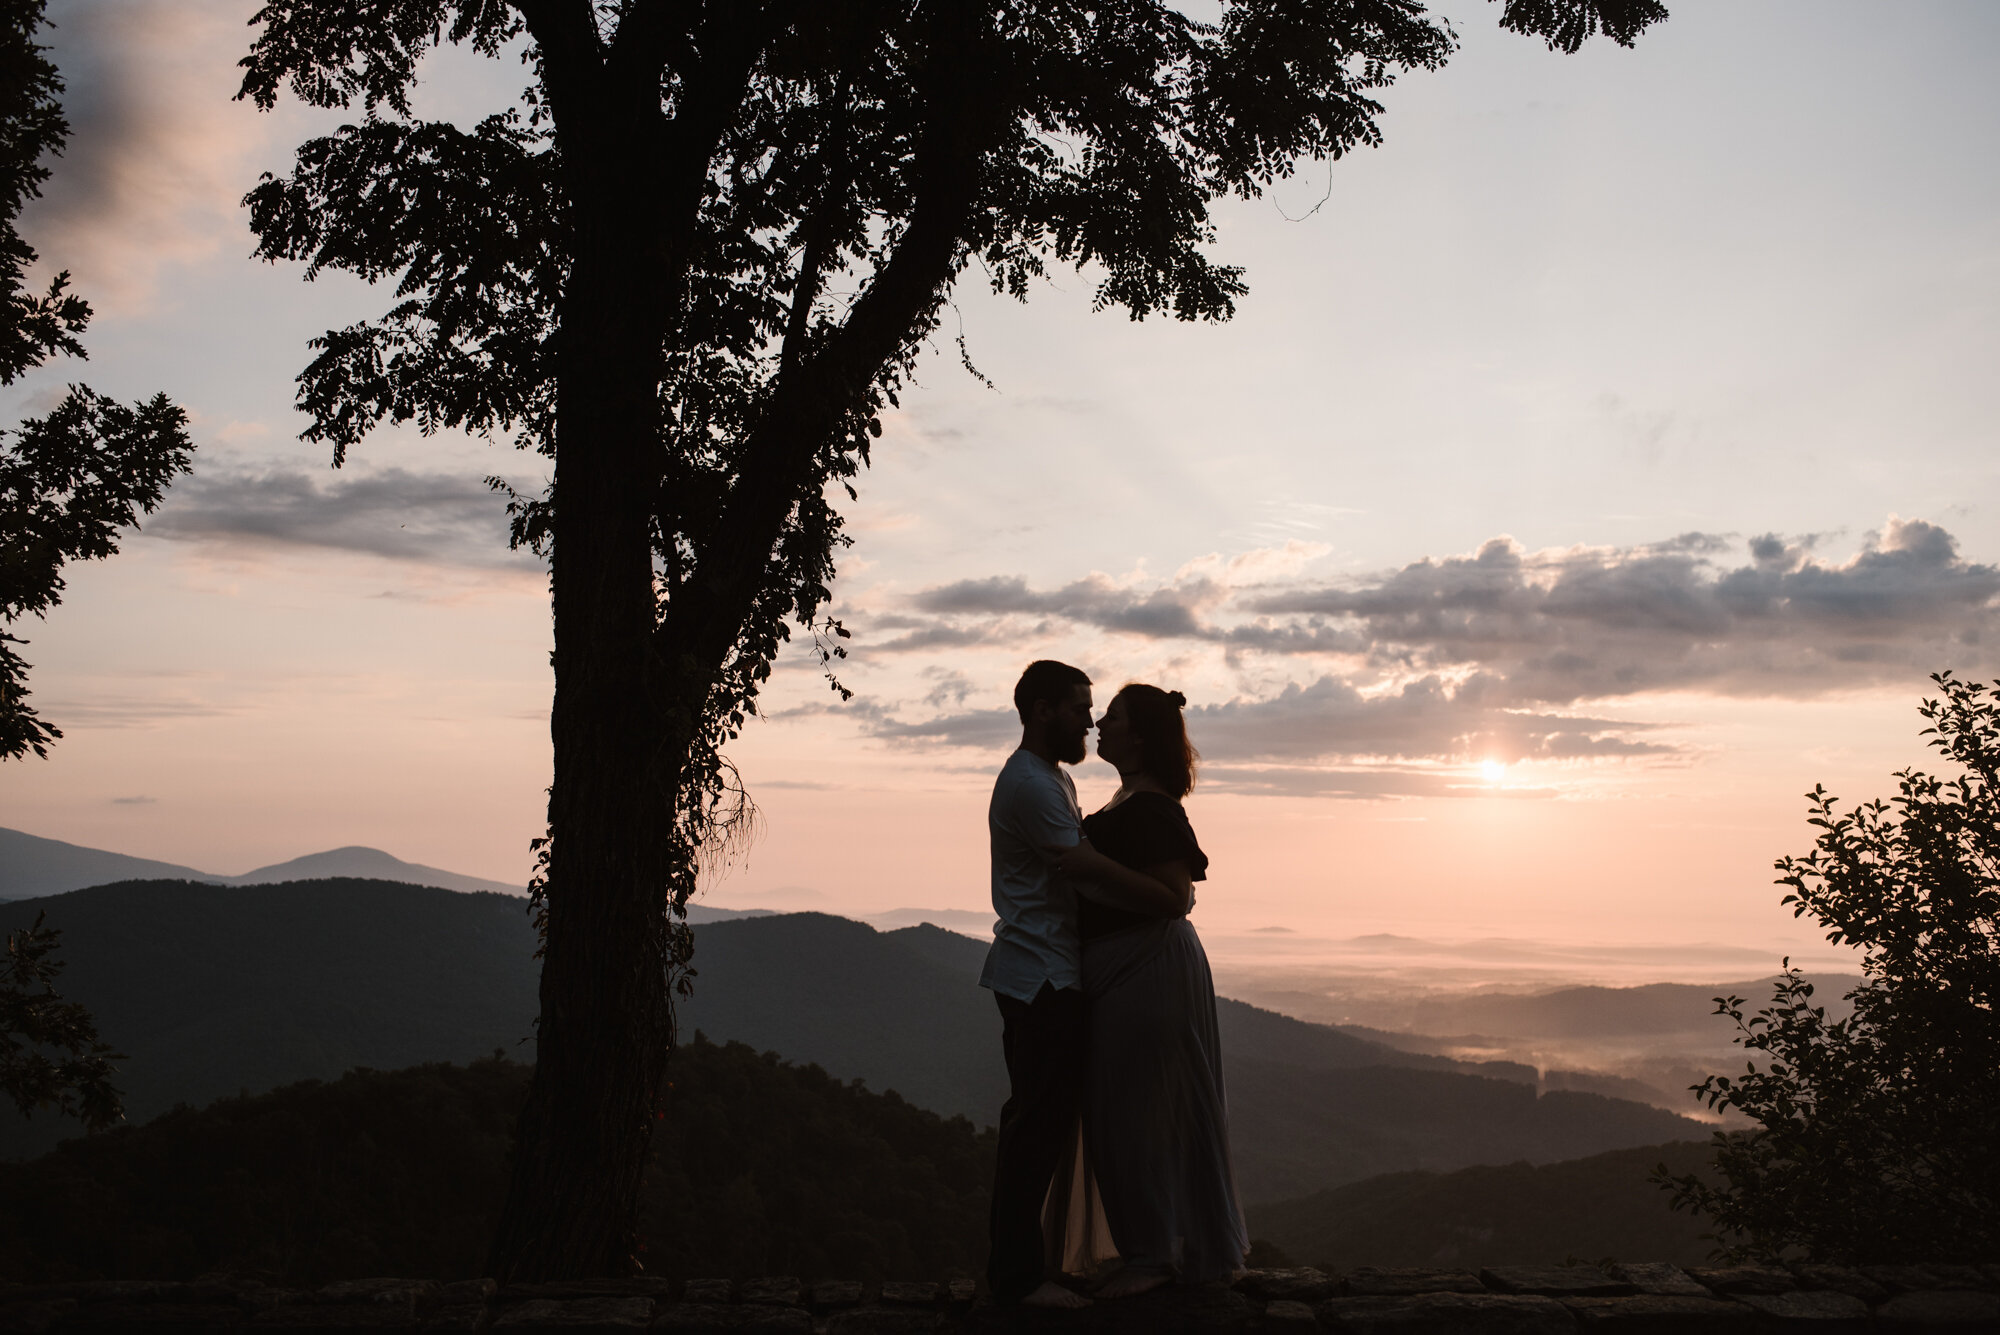 Sunrise Photoshoot - Adventurous Couple Session - Shenandoah National Park Photographer - White Sails Creative _36.jpg